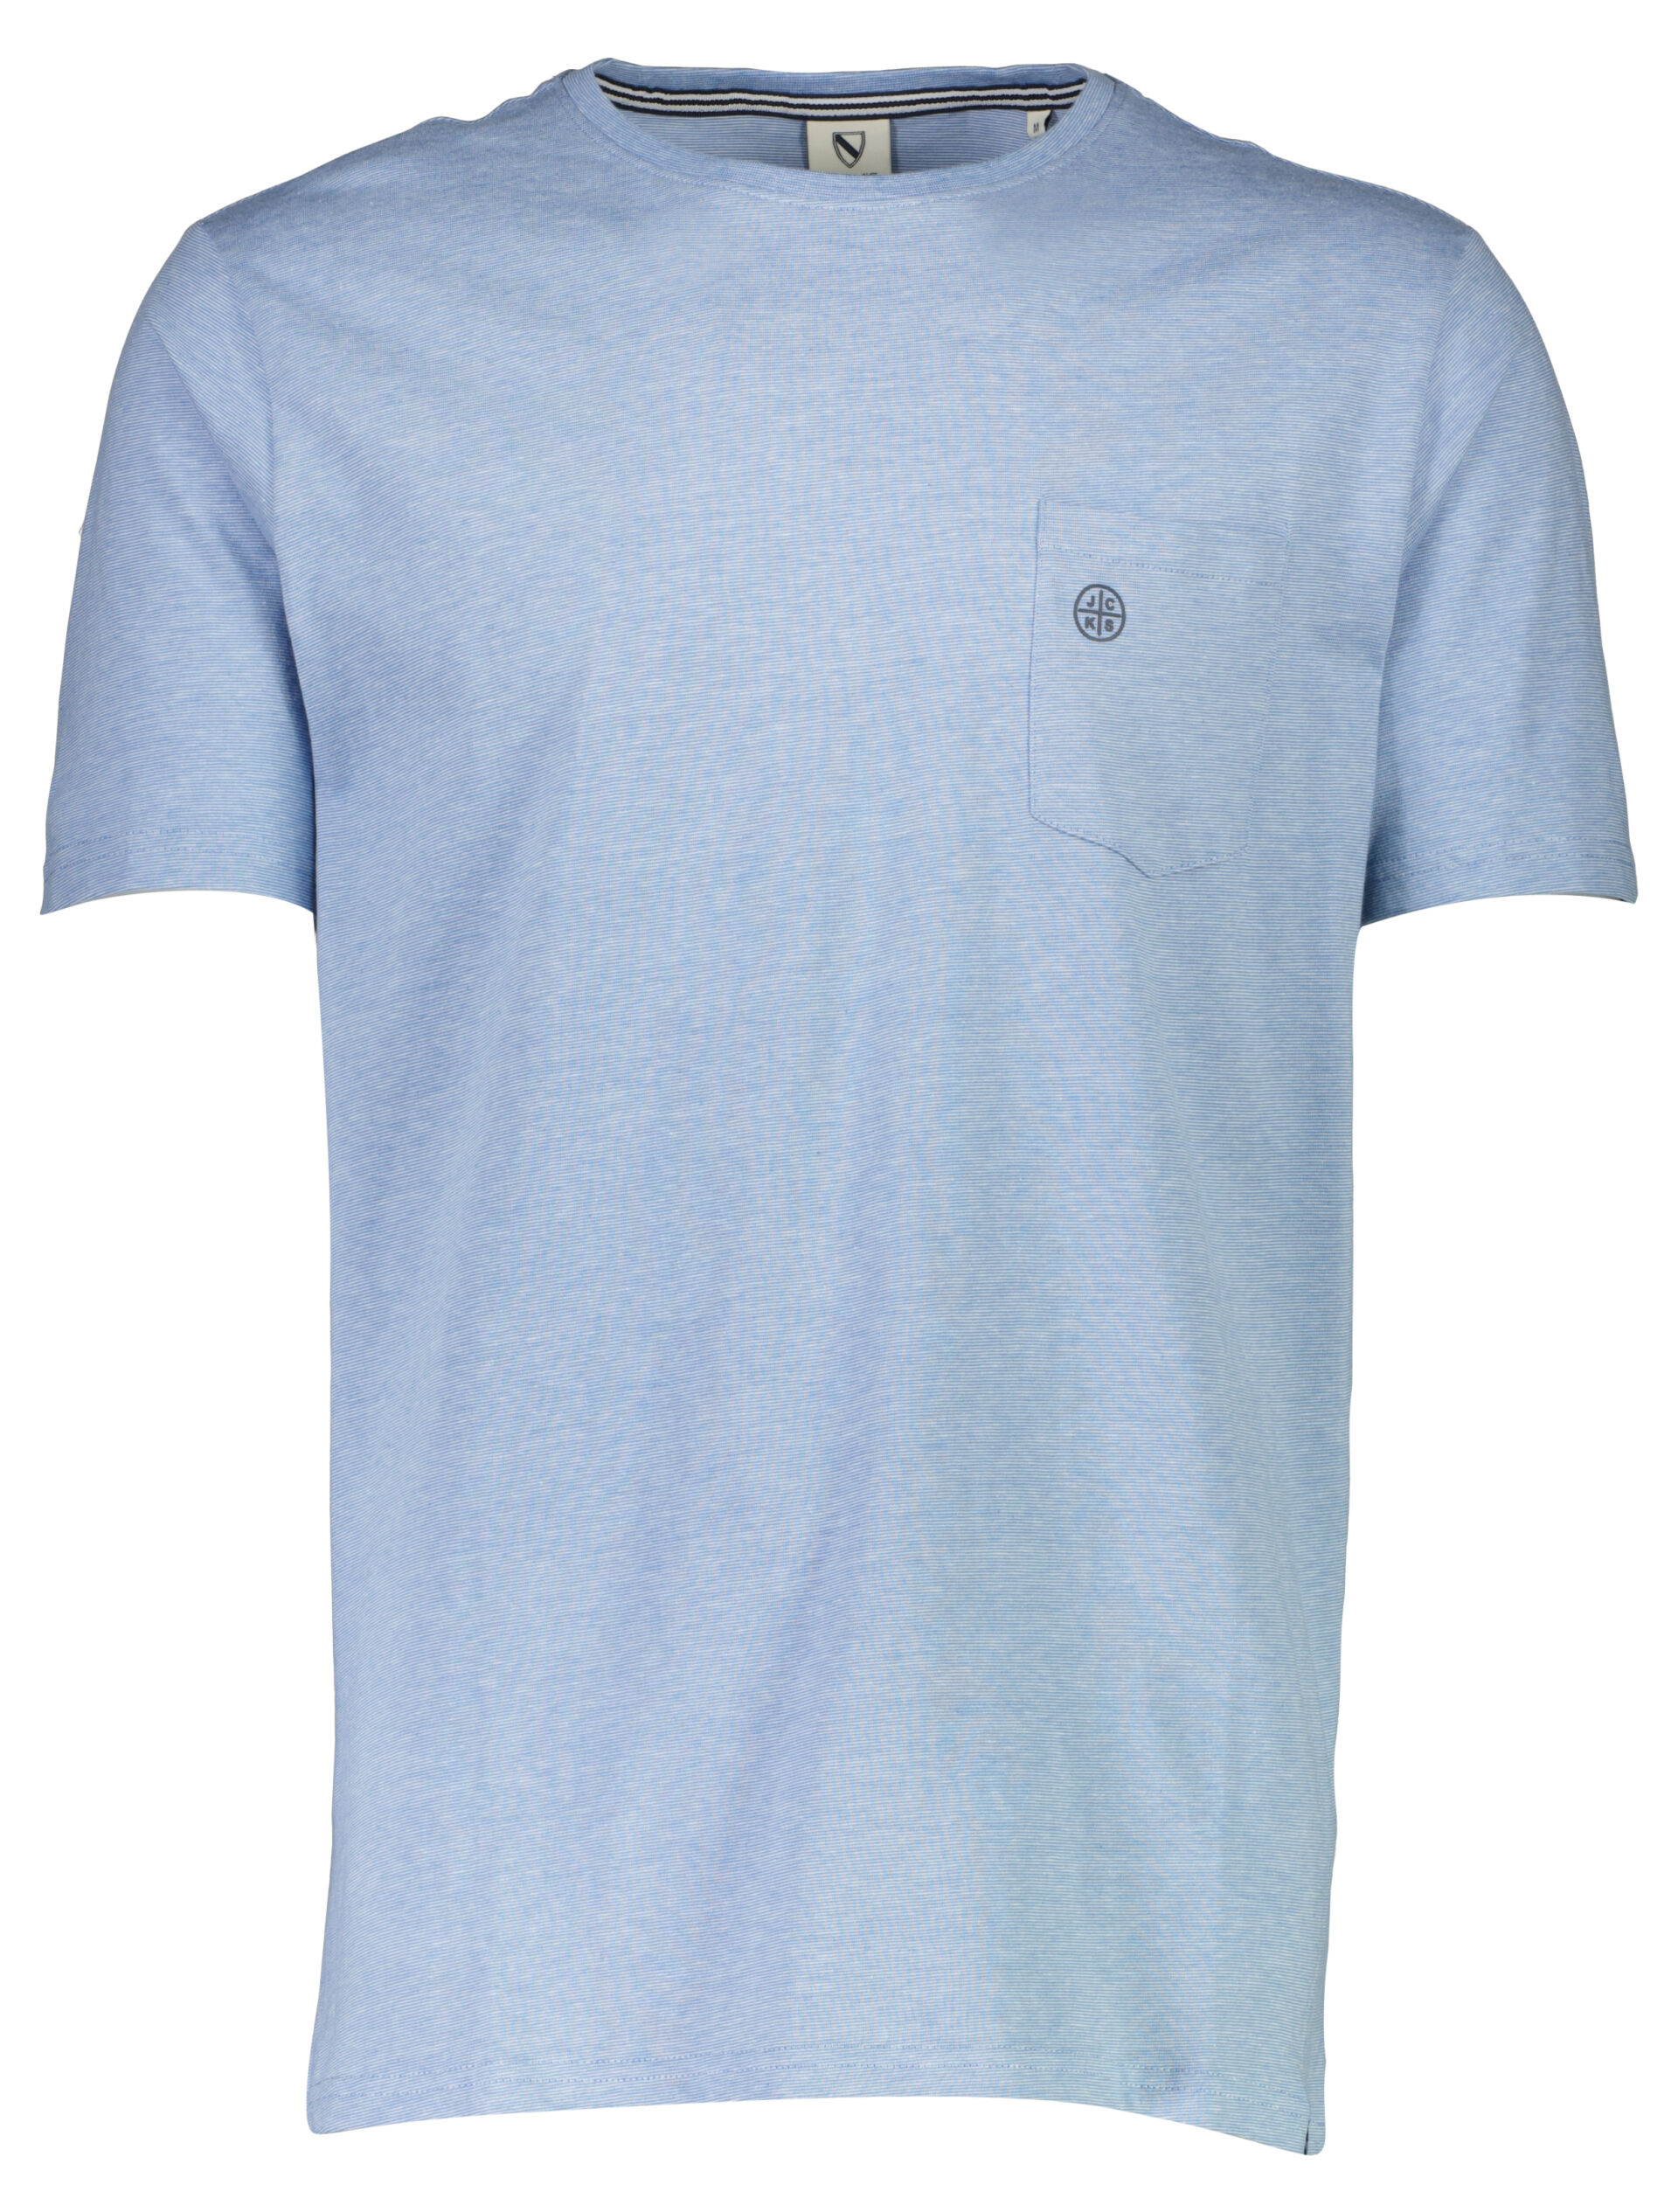 Jack's  T-shirt Blå 3-400041